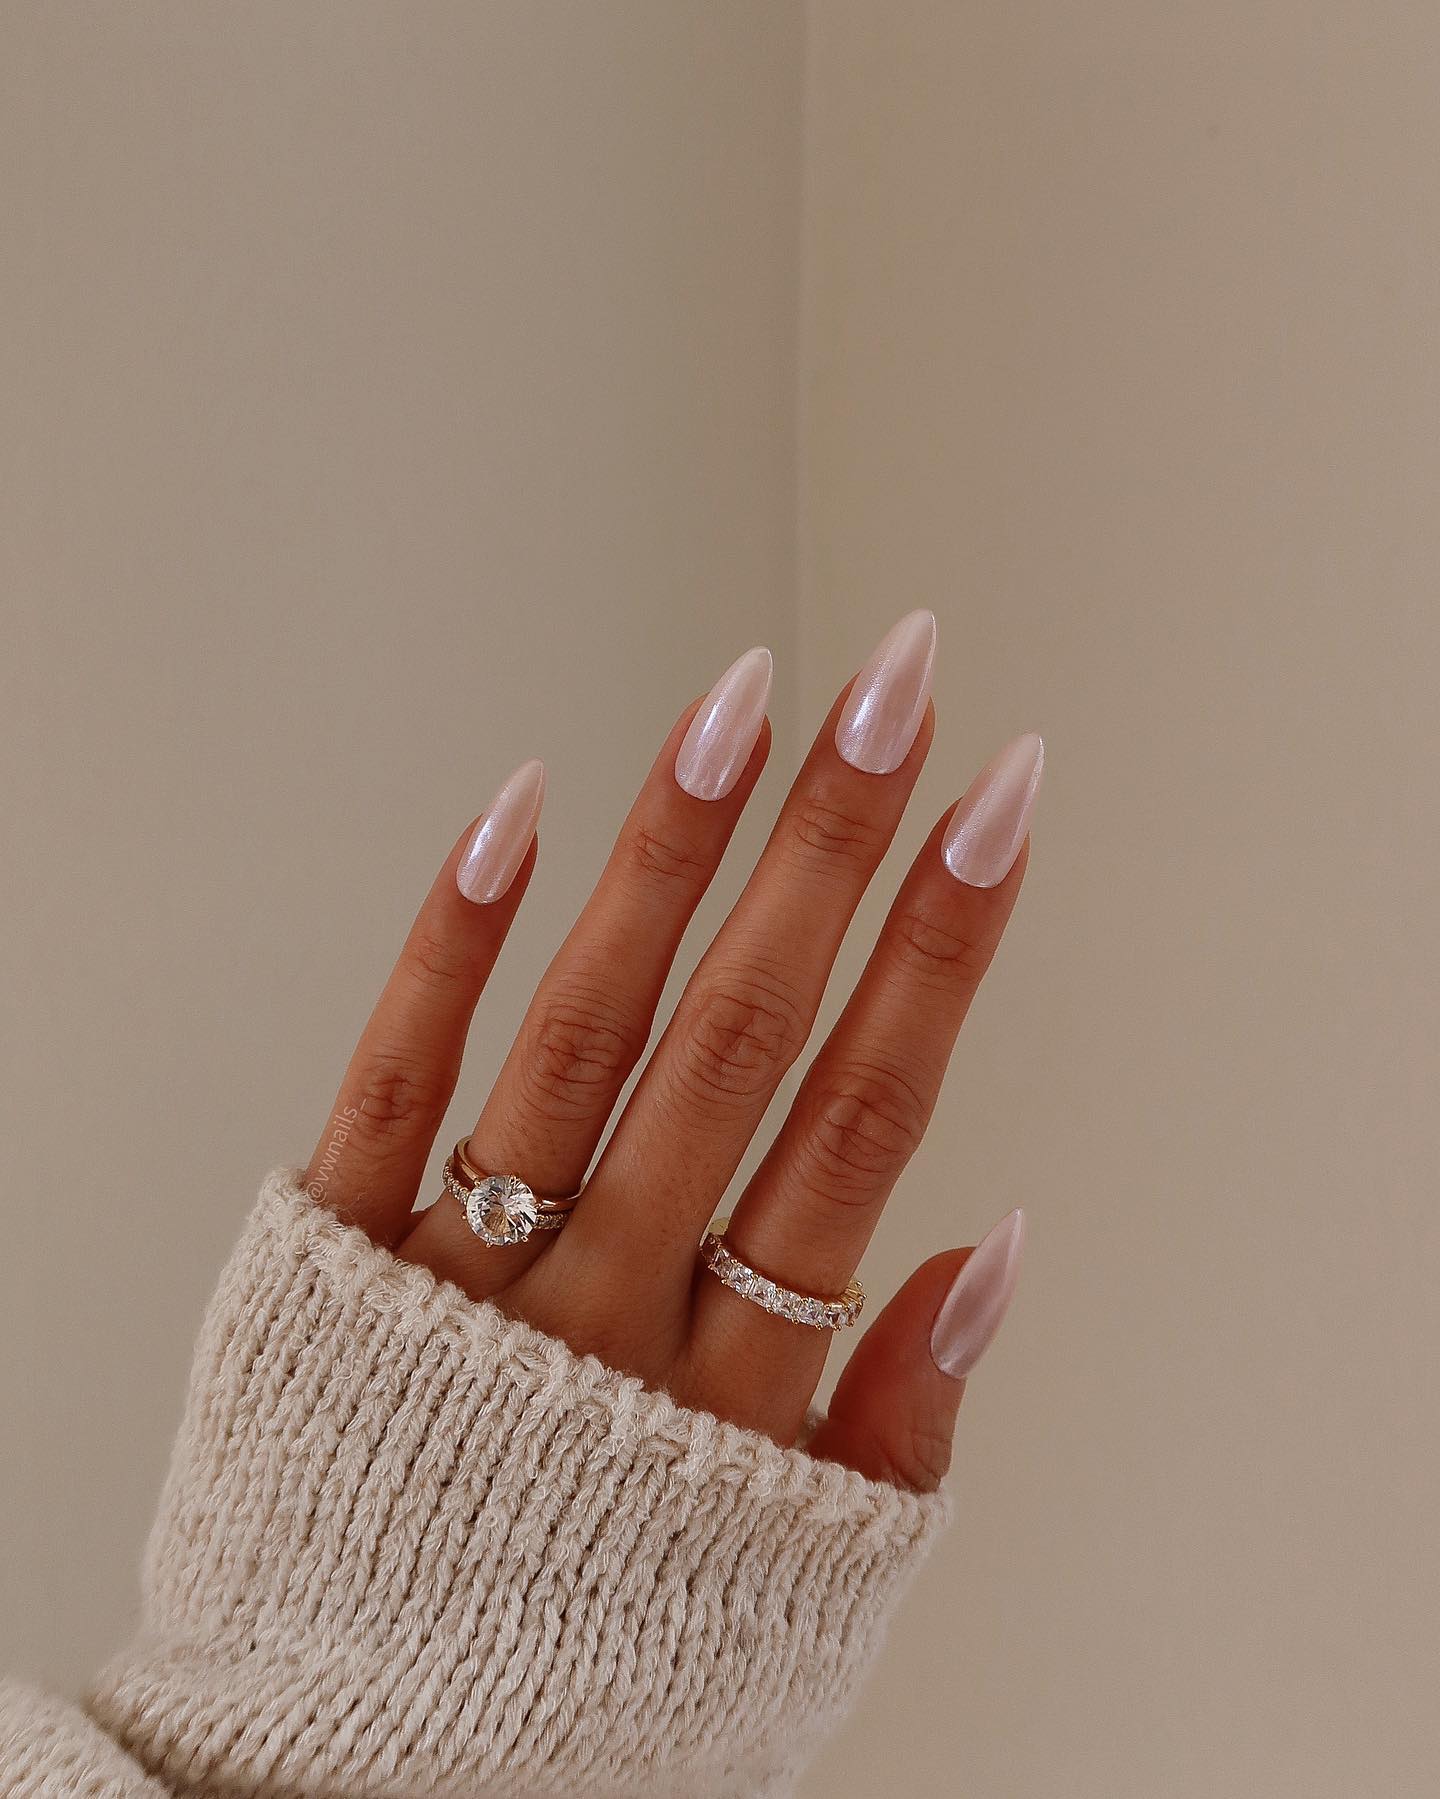 Solo mire esta impresionante combinación de esmalte de uñas y anillos. Un look sencillo pero súper chic es fácil de lograr así.